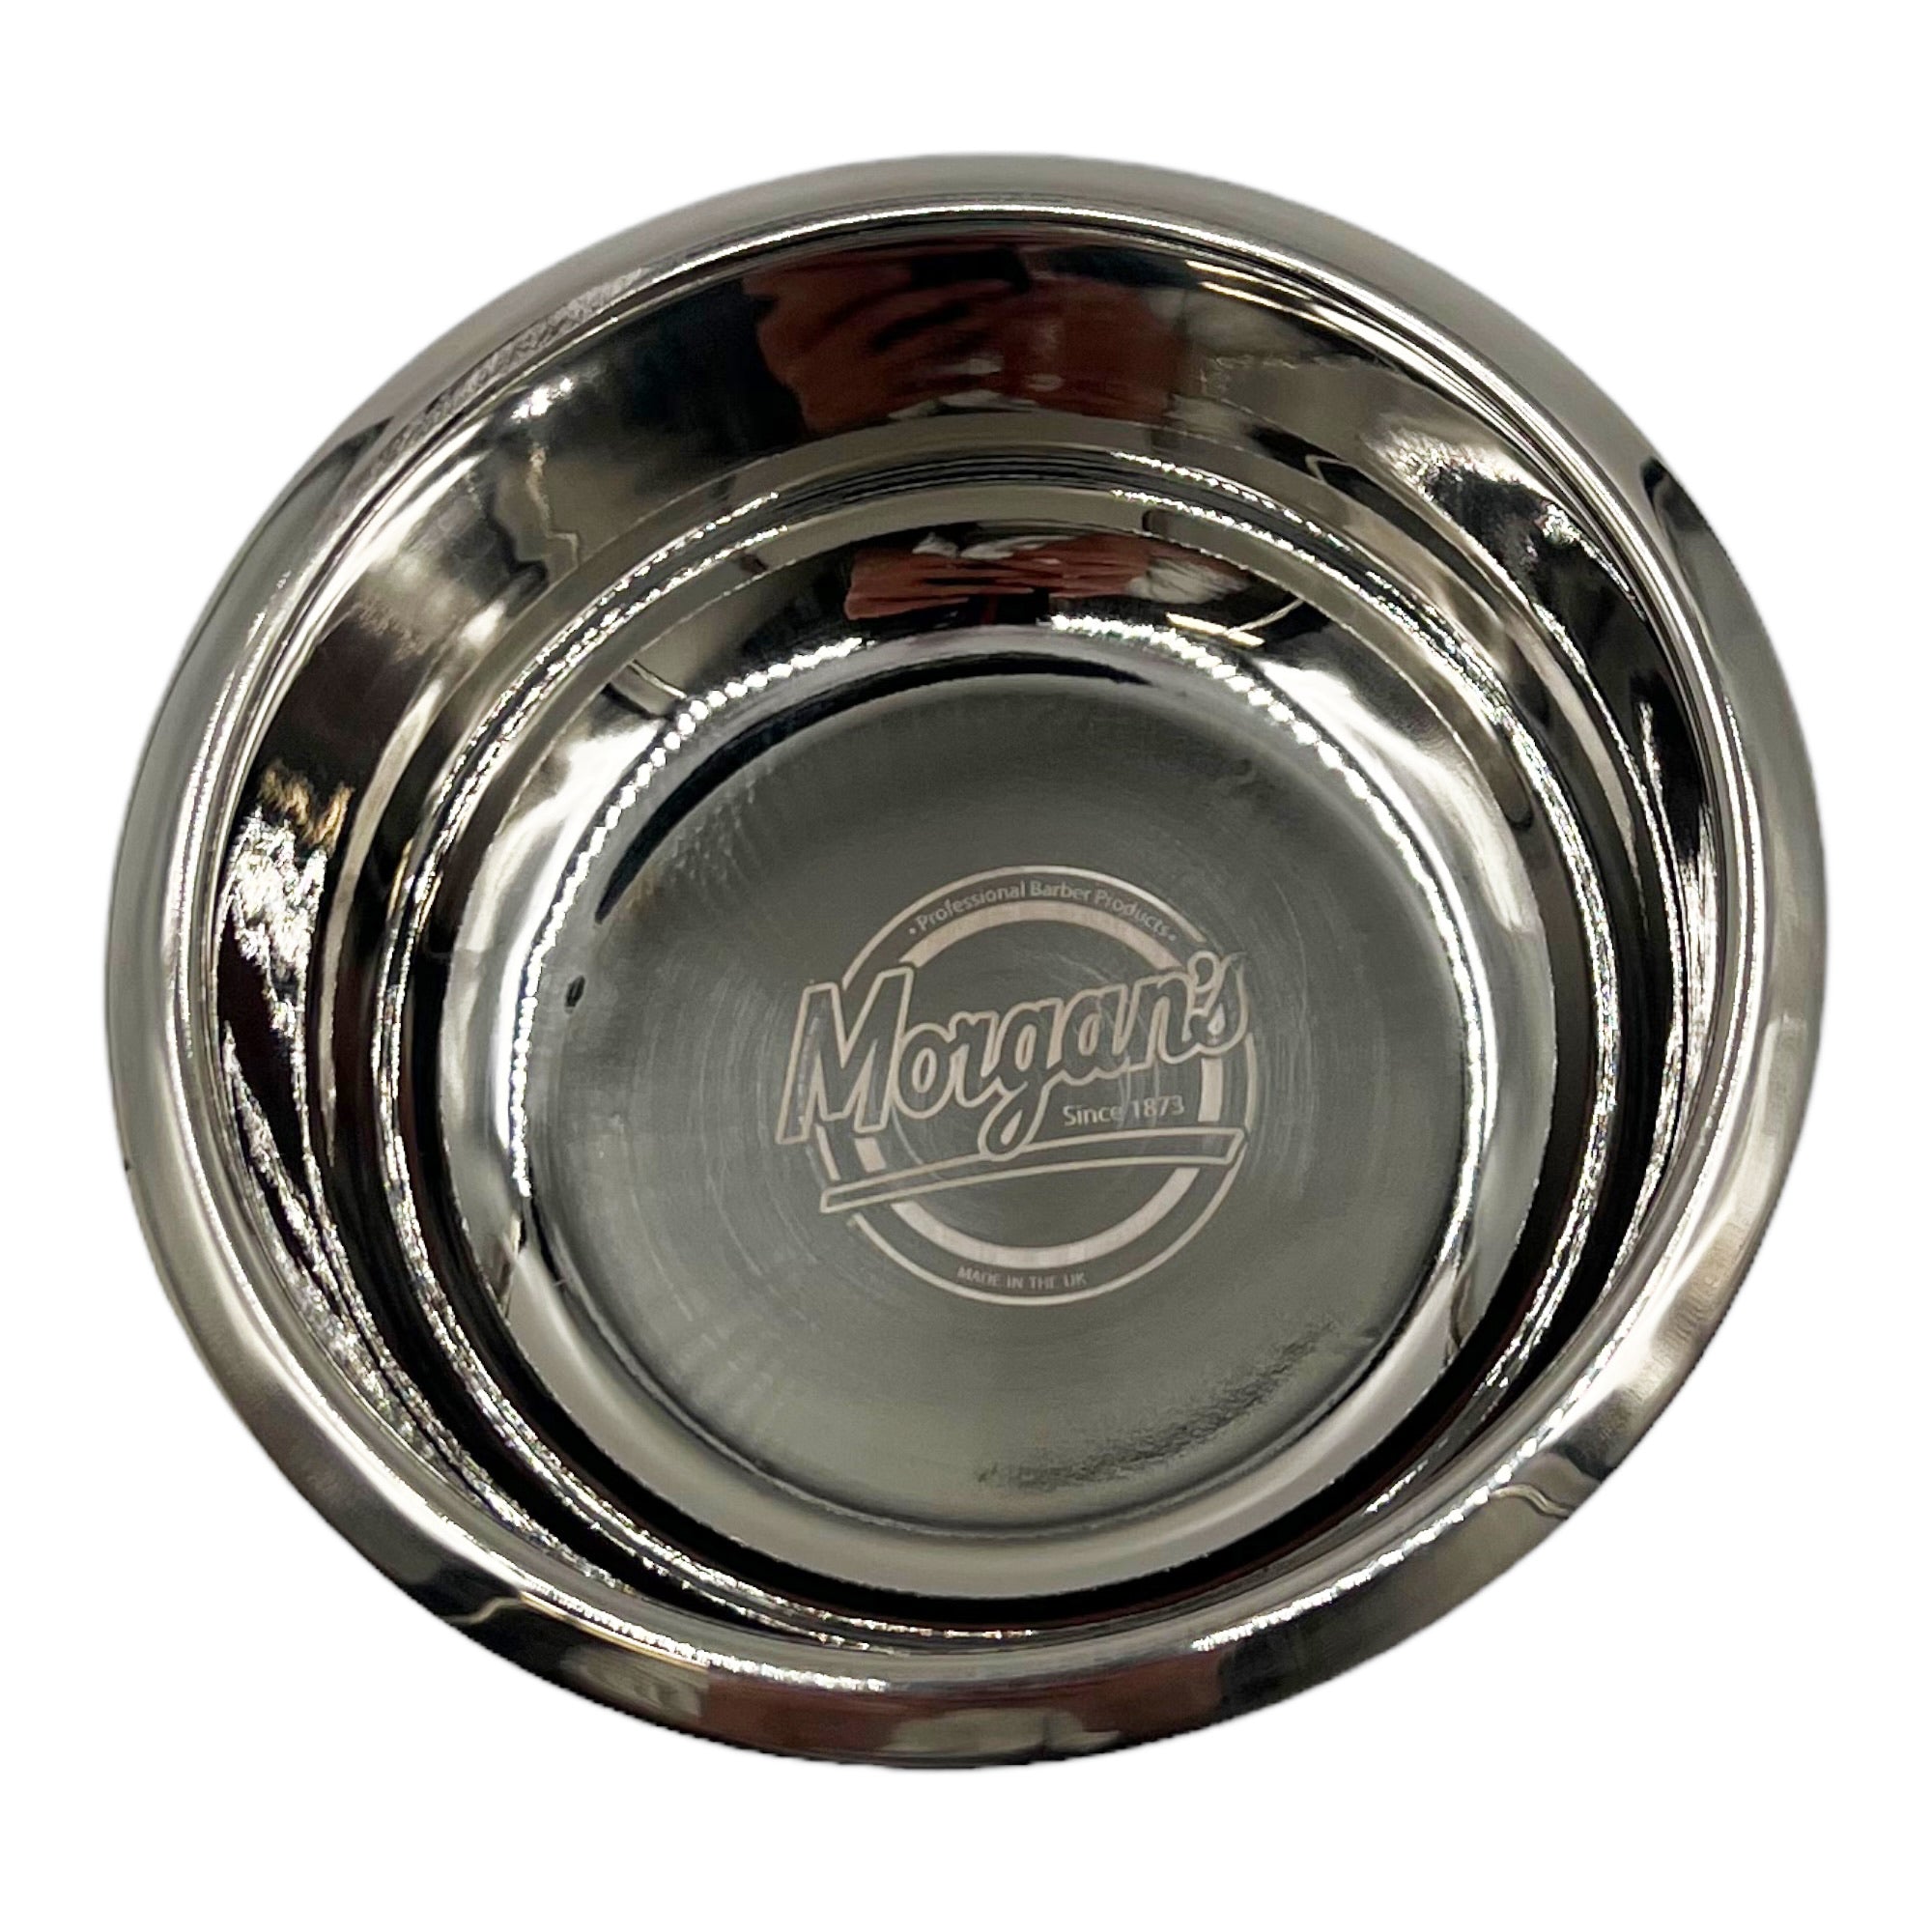 Morgan's - Stainless Steel Shaving Bowl